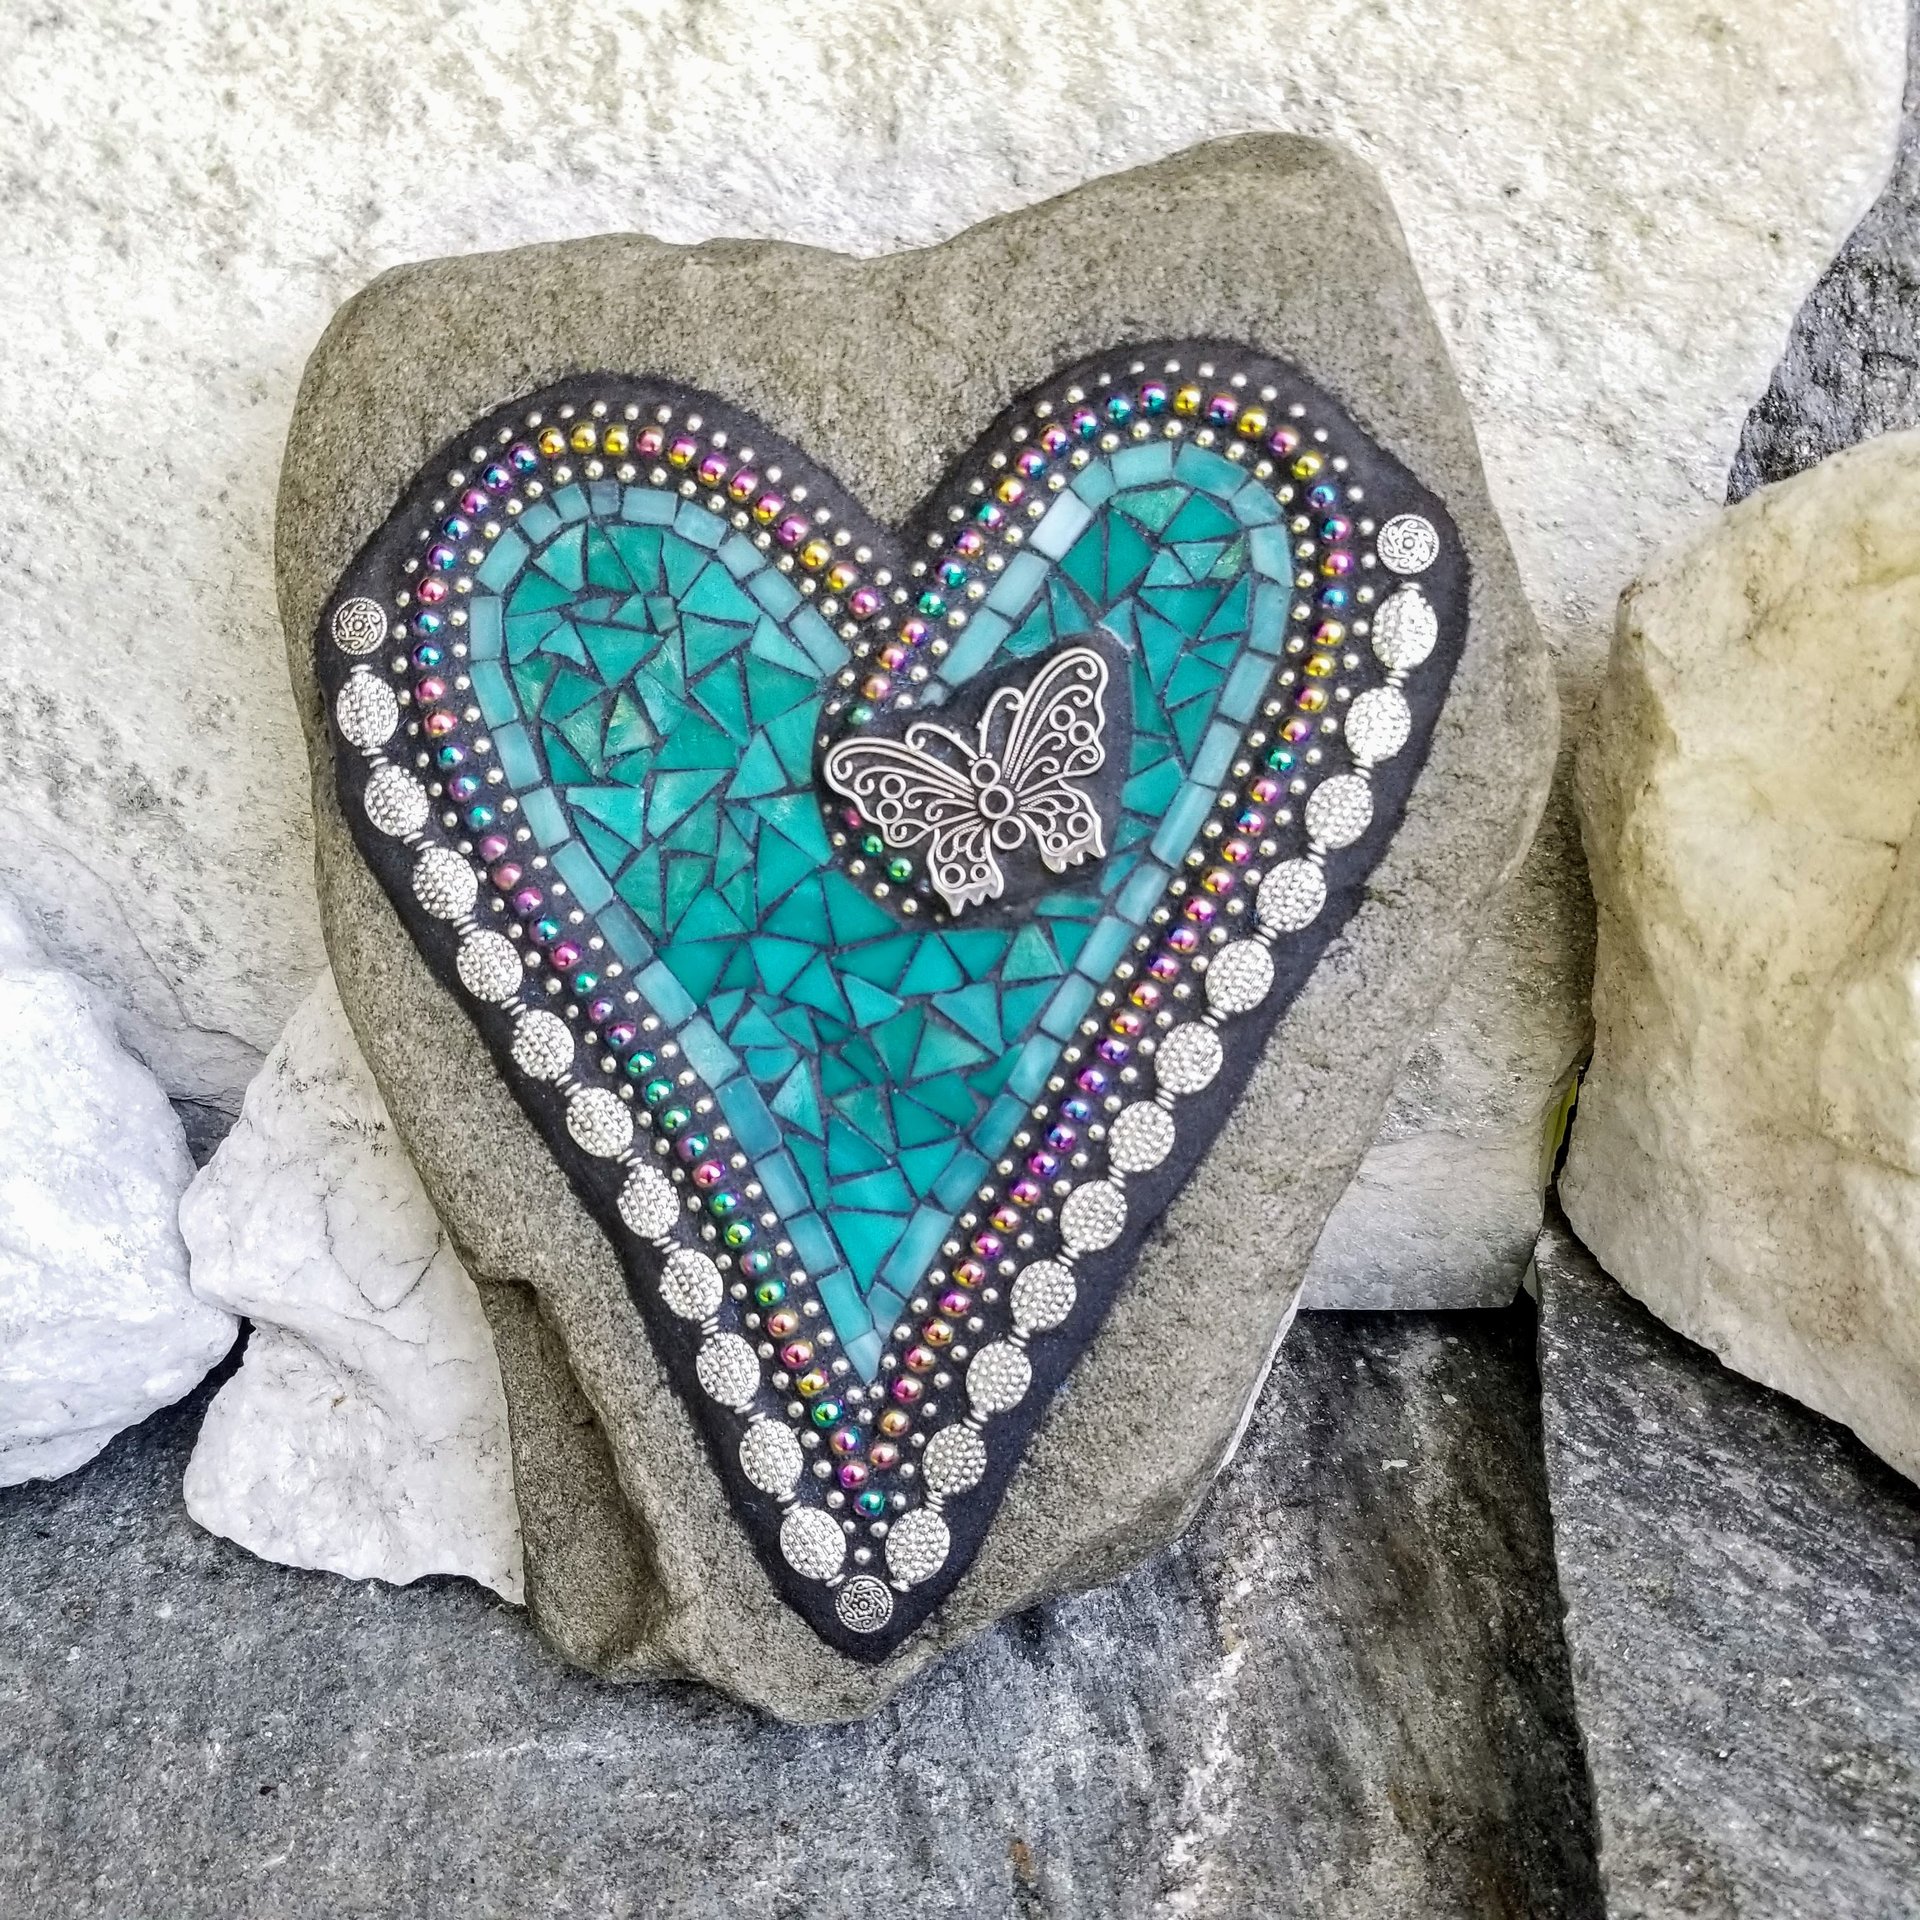 Teal Heart -Mosaic / Garden Stone, Butterfly